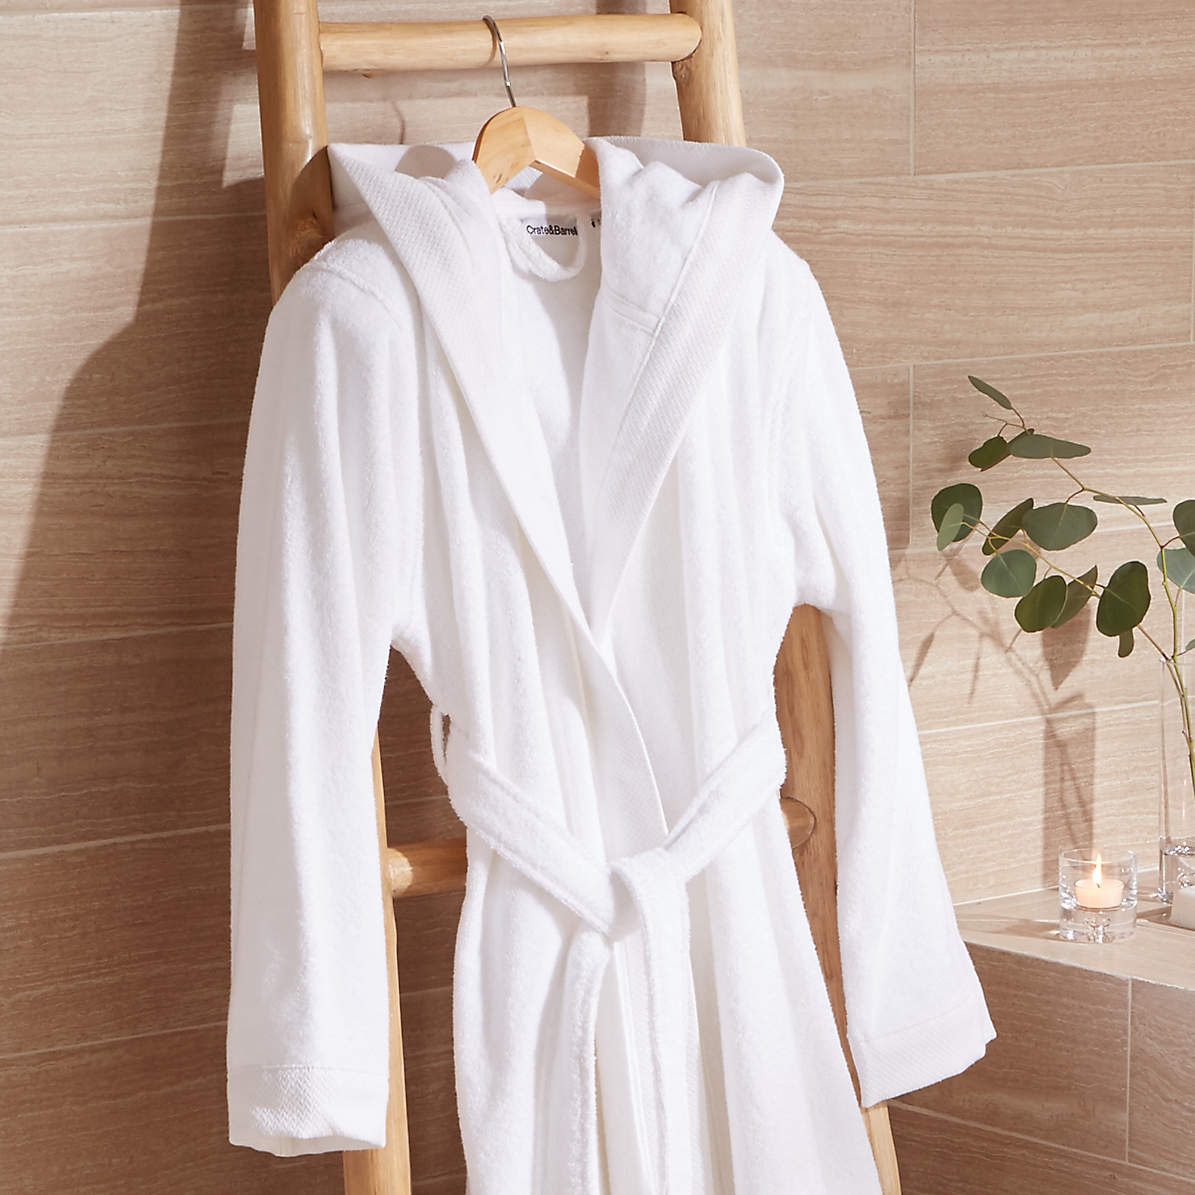 https://cb.scene7.com/is/image/Crate/TurkishCttn500grRobeWhtSMSHS19/$web_pdp_main_carousel_zoom_med$/240201070551/white-turkish-bath-robe.jpg